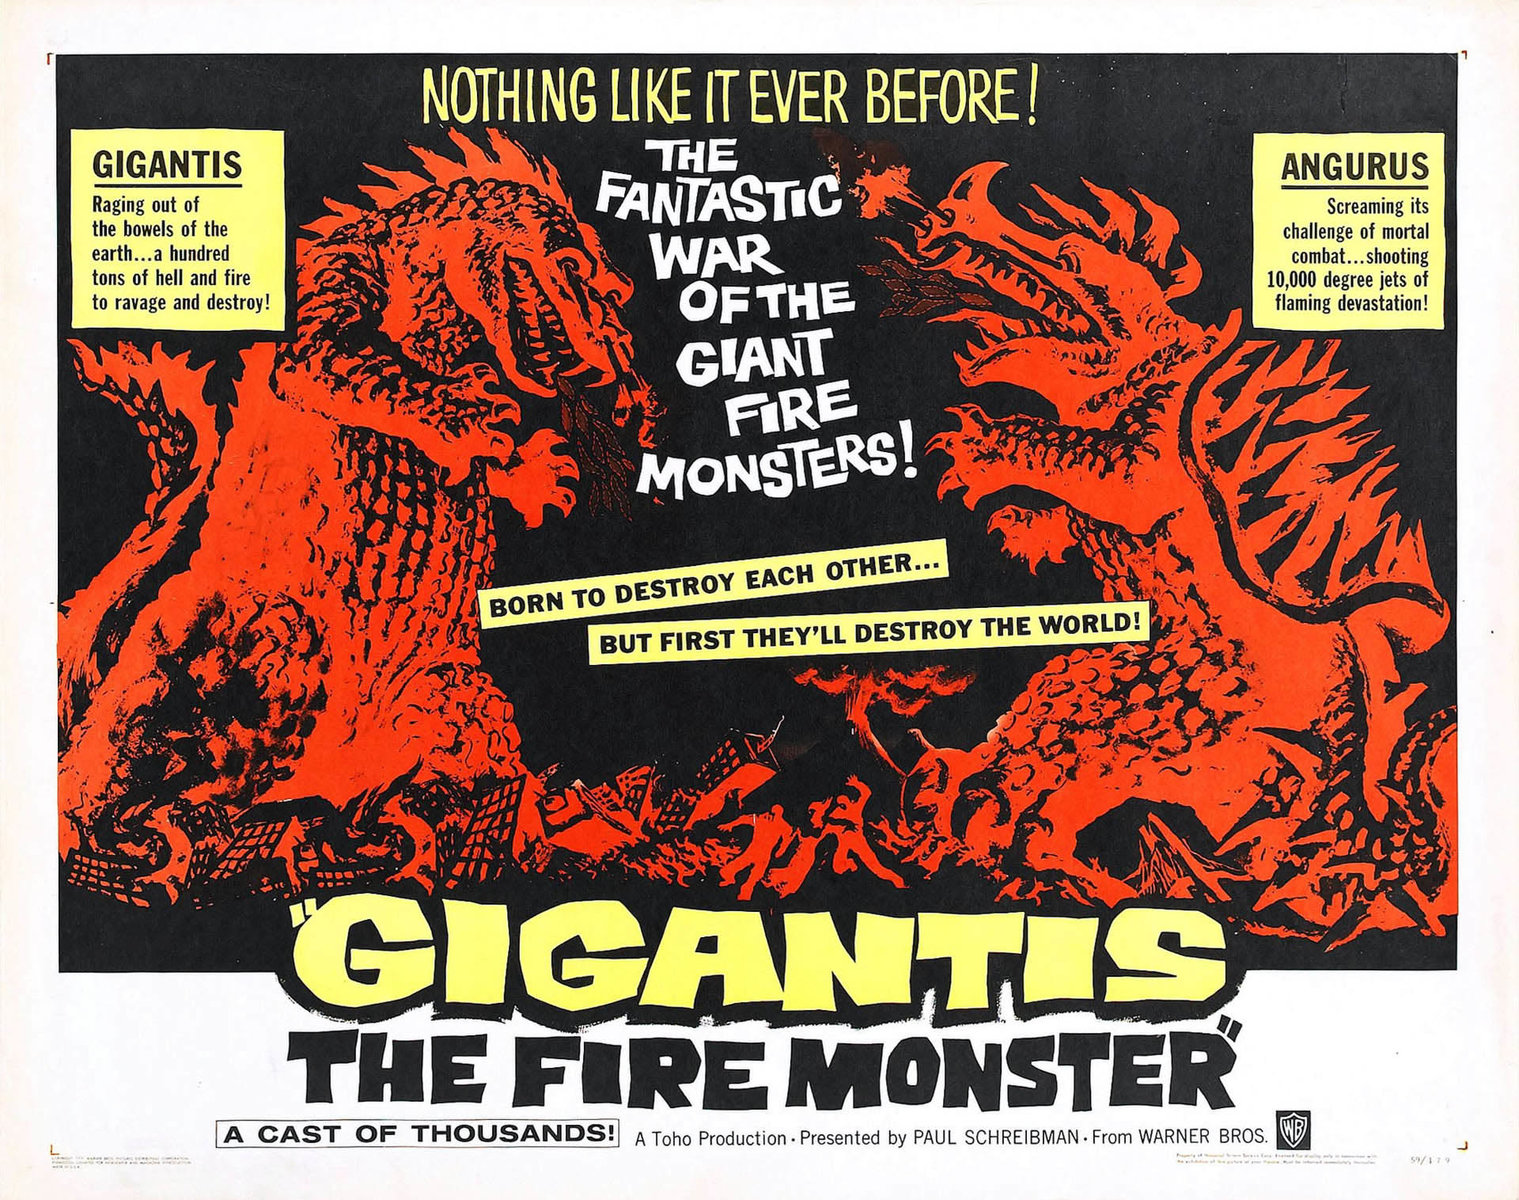 Ad for GIGANTIS THE FIRE MONSTER